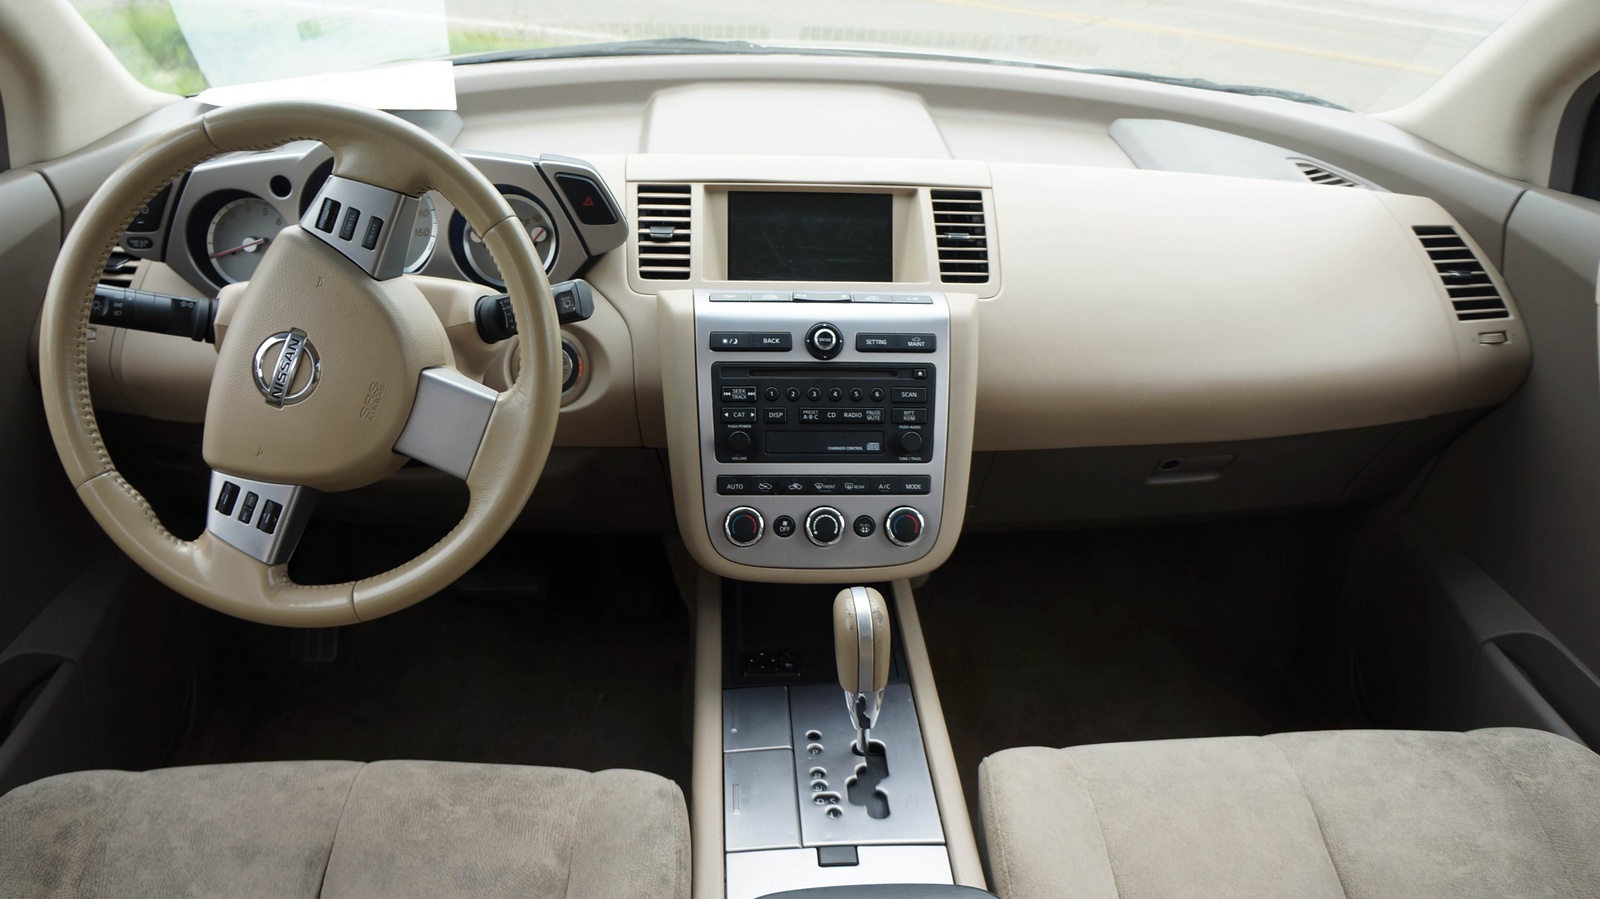 2006 Nissan murano interior dimensions